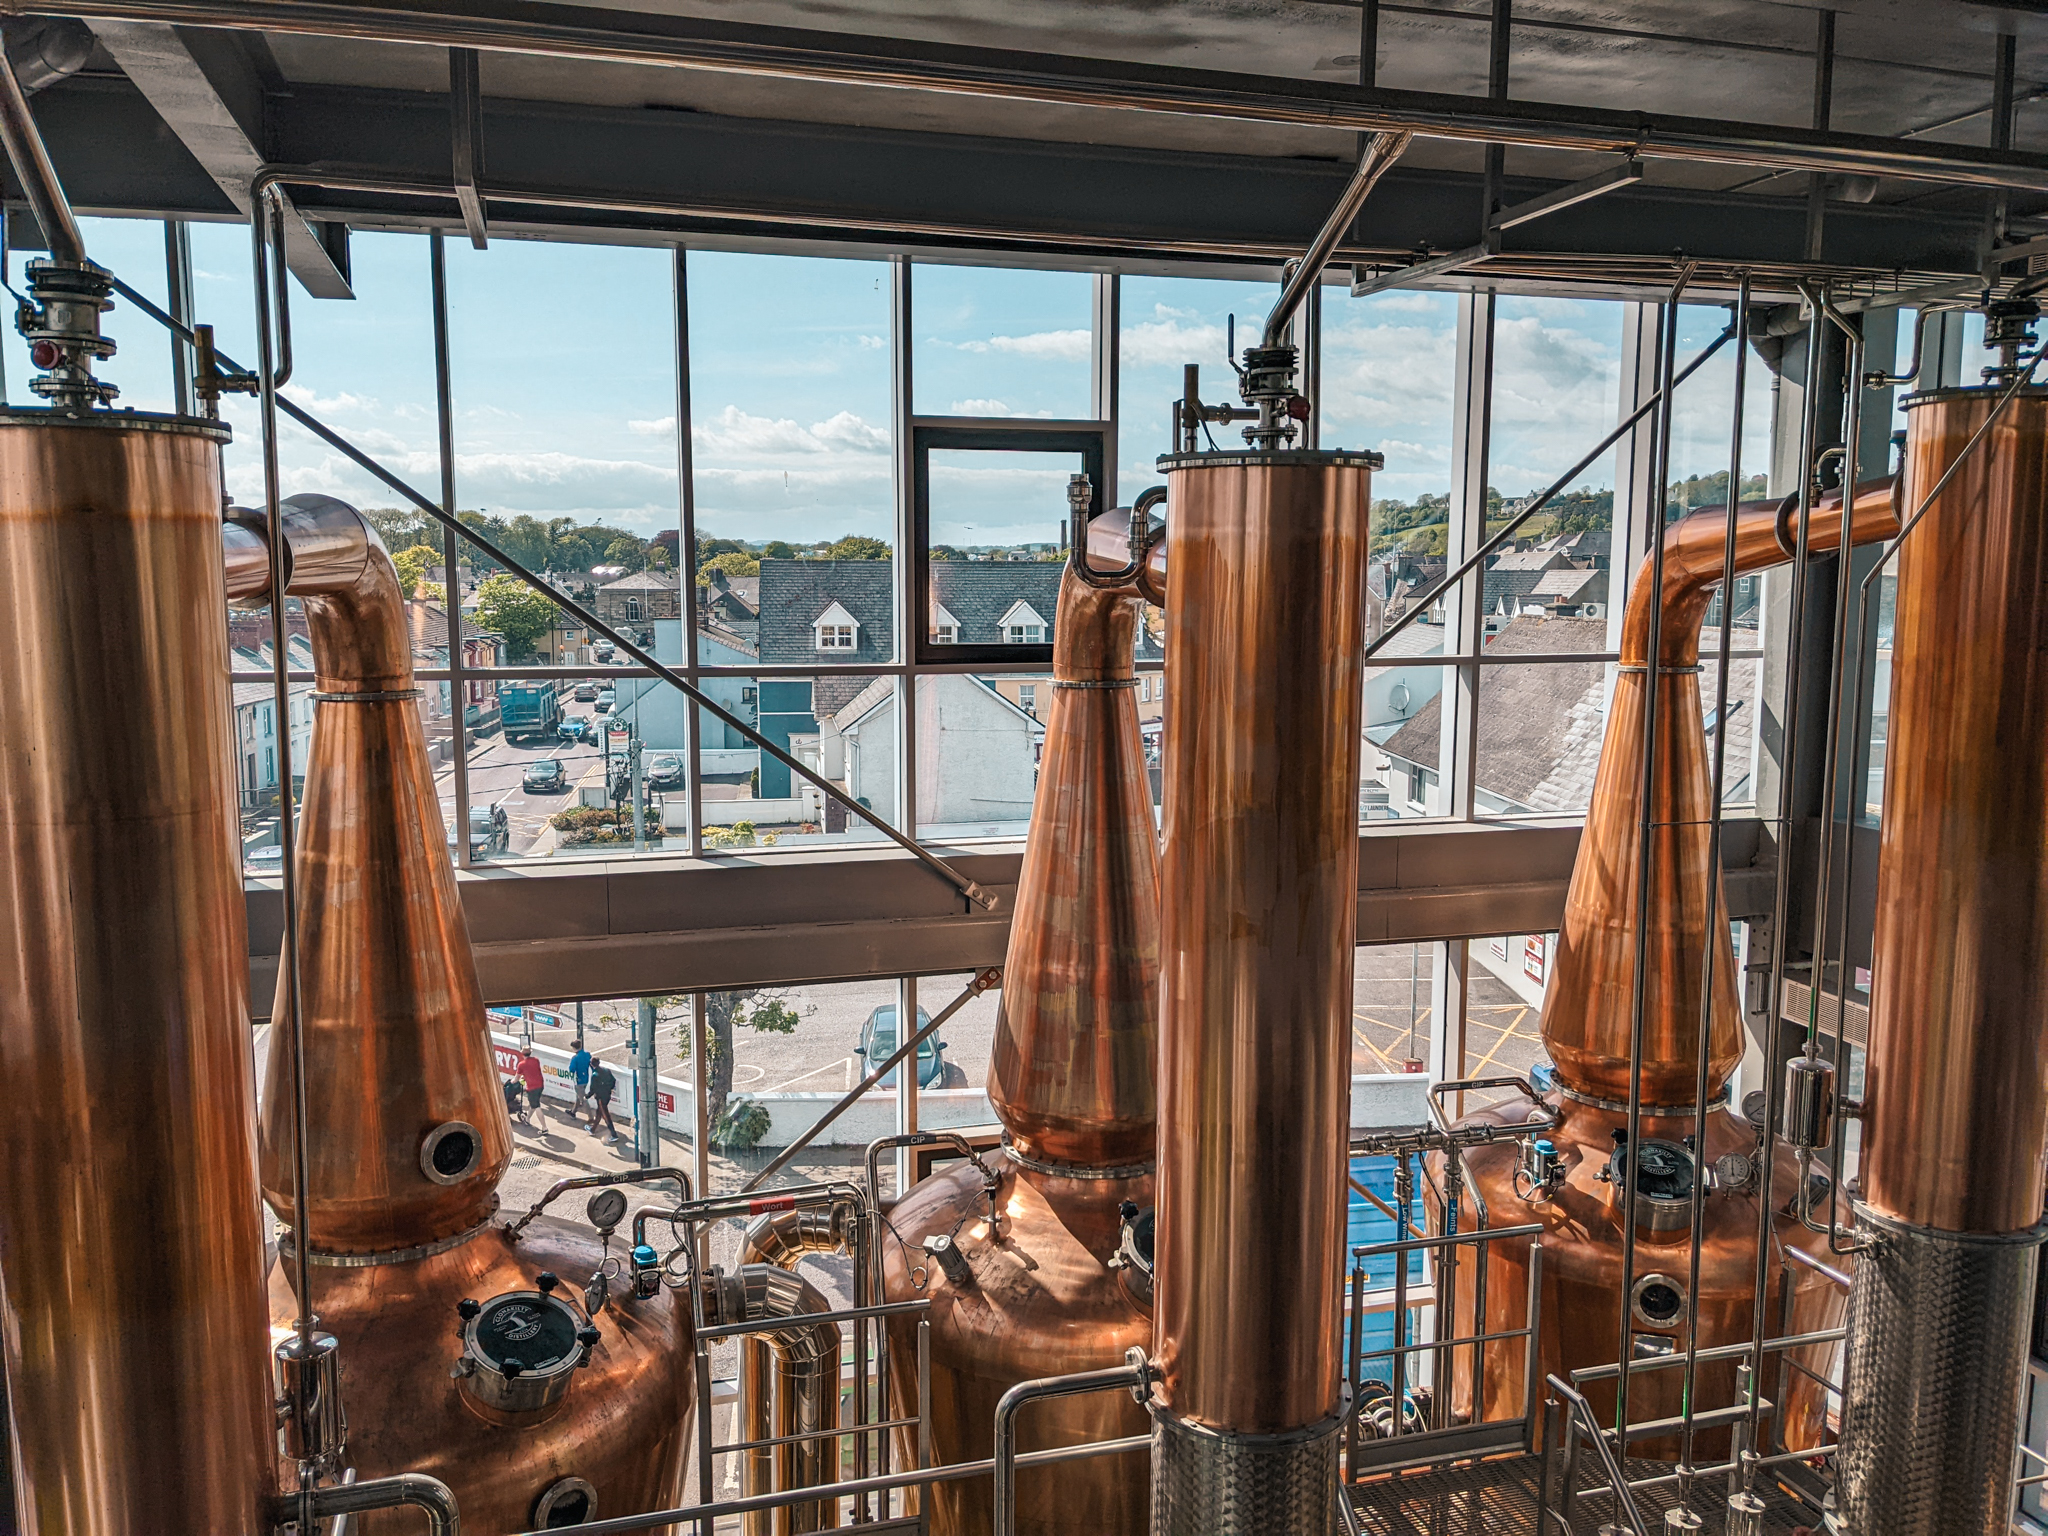 Brennereibesichtigung Clonakilty Distillery